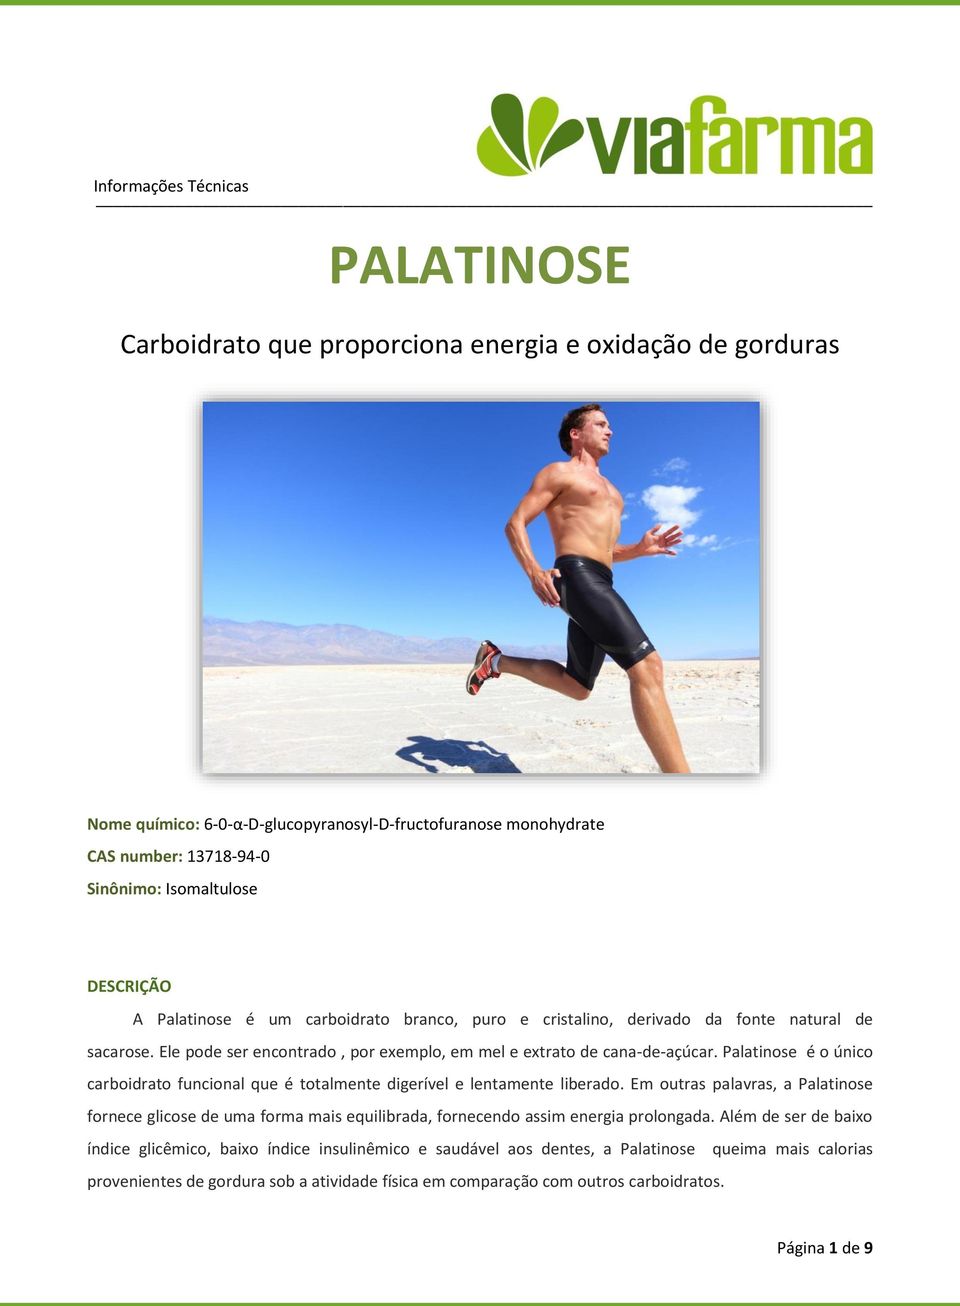 Palatinose é o único carboidrato funcional que é totalmente digerível e lentamente liberado.